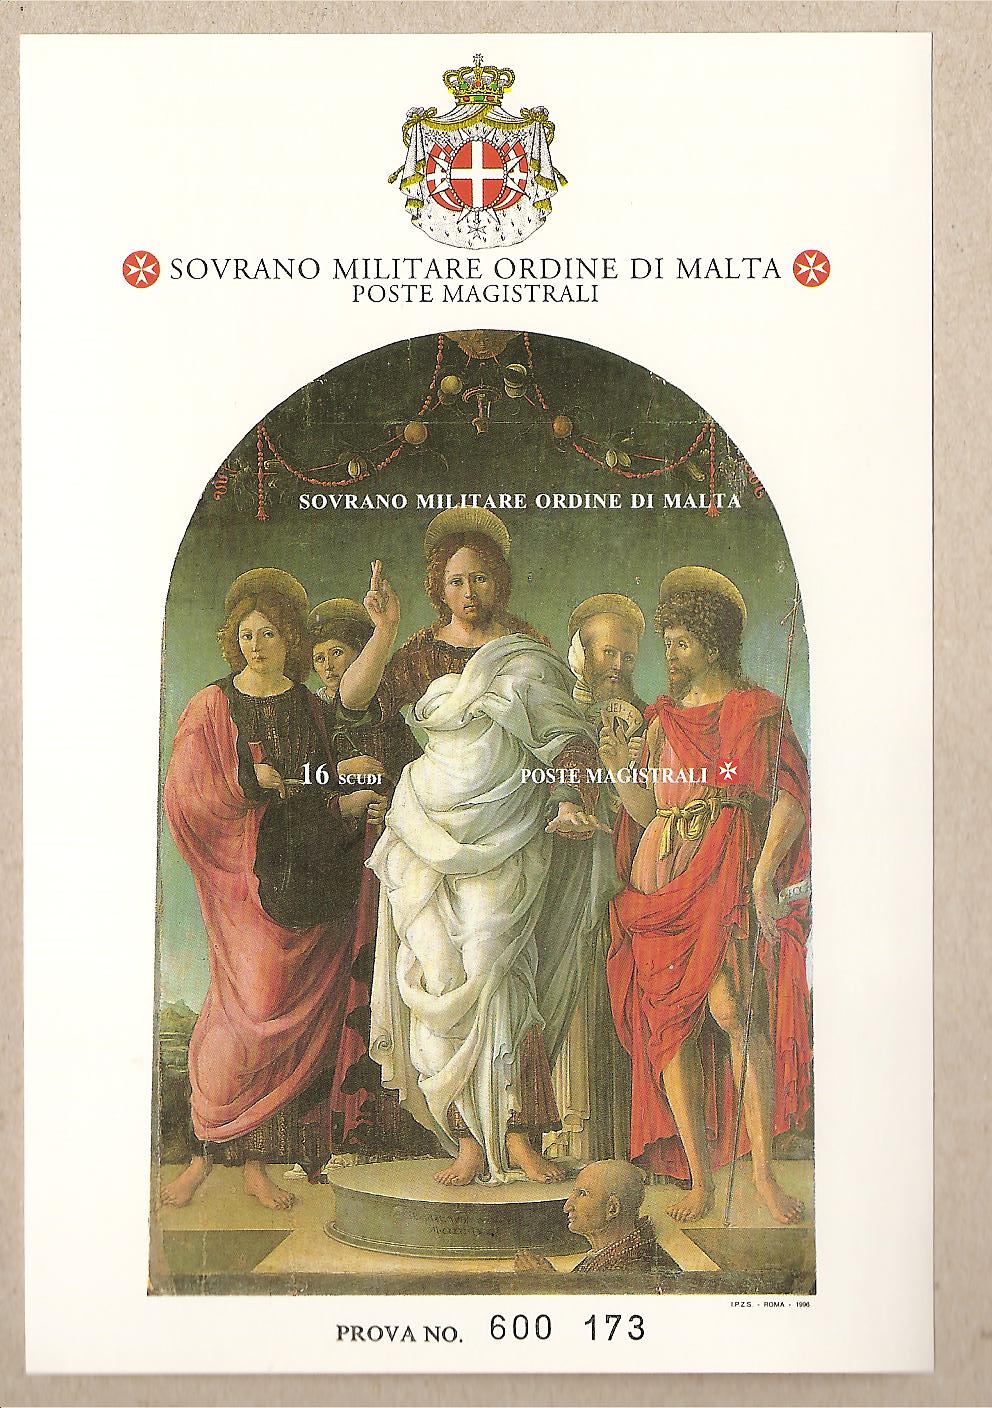 36871 - SMOM - Prova di stampa foglietto BF48 - 1996 - San Giovanni Evangelista